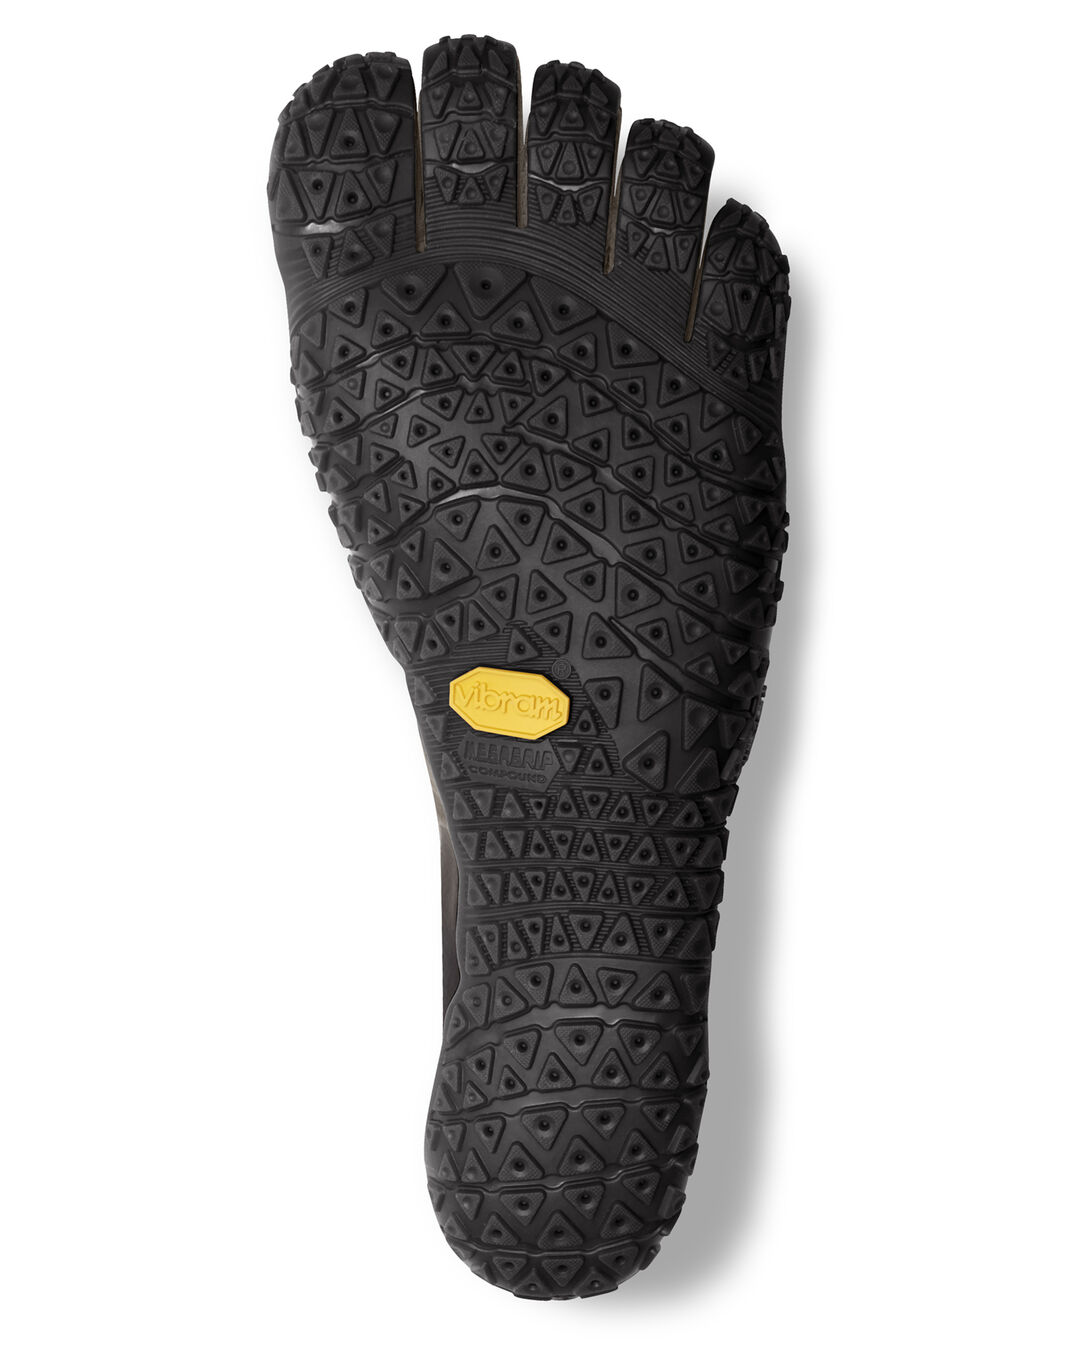 Vibram Fivefingers V-Alpha multifunctional shoe with 3mm megagrip sole